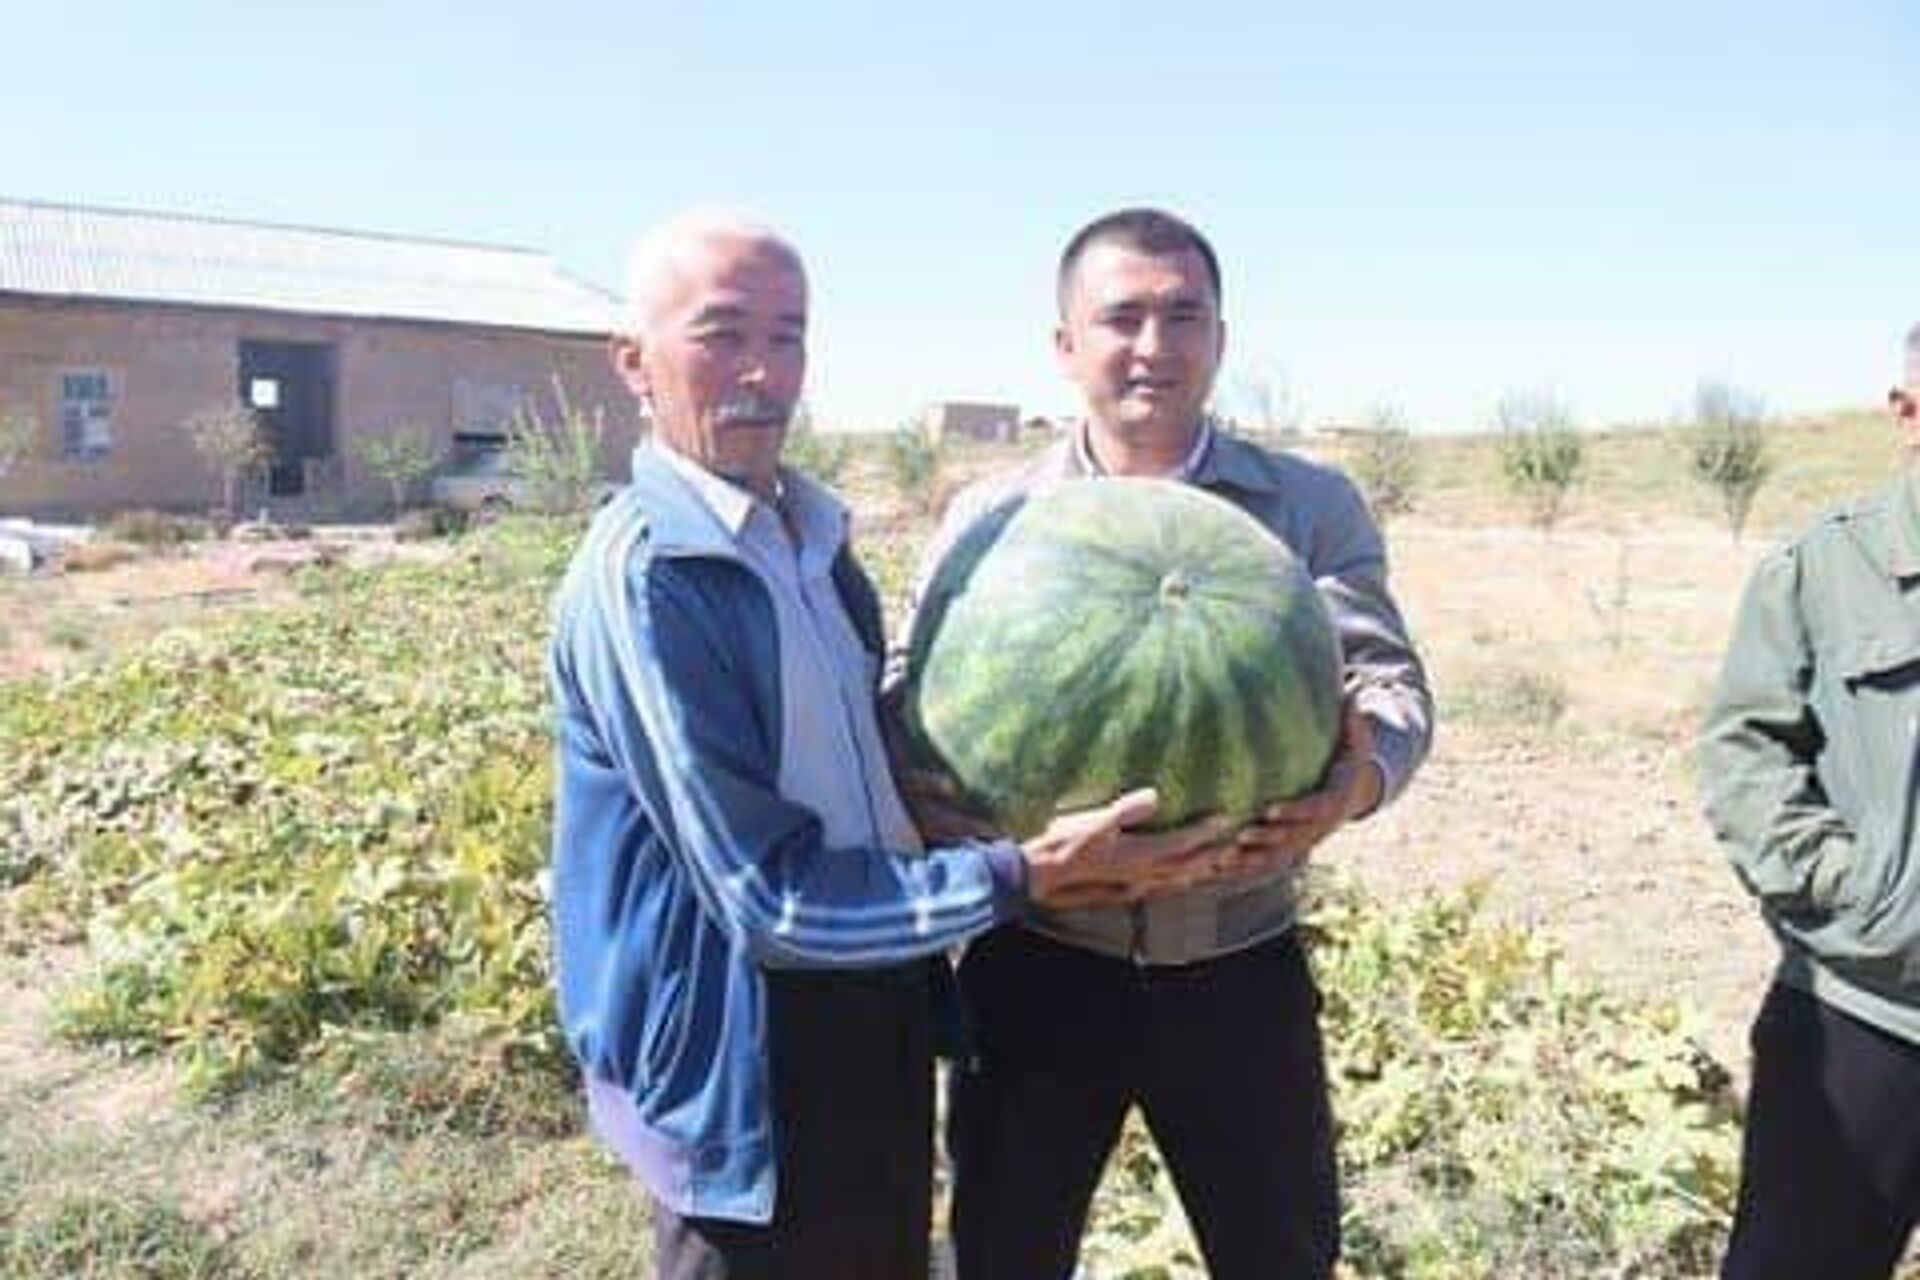  В Самарканде фермеры выращивают крупные арбузы - Sputnik Узбекистан, 1920, 05.10.2021